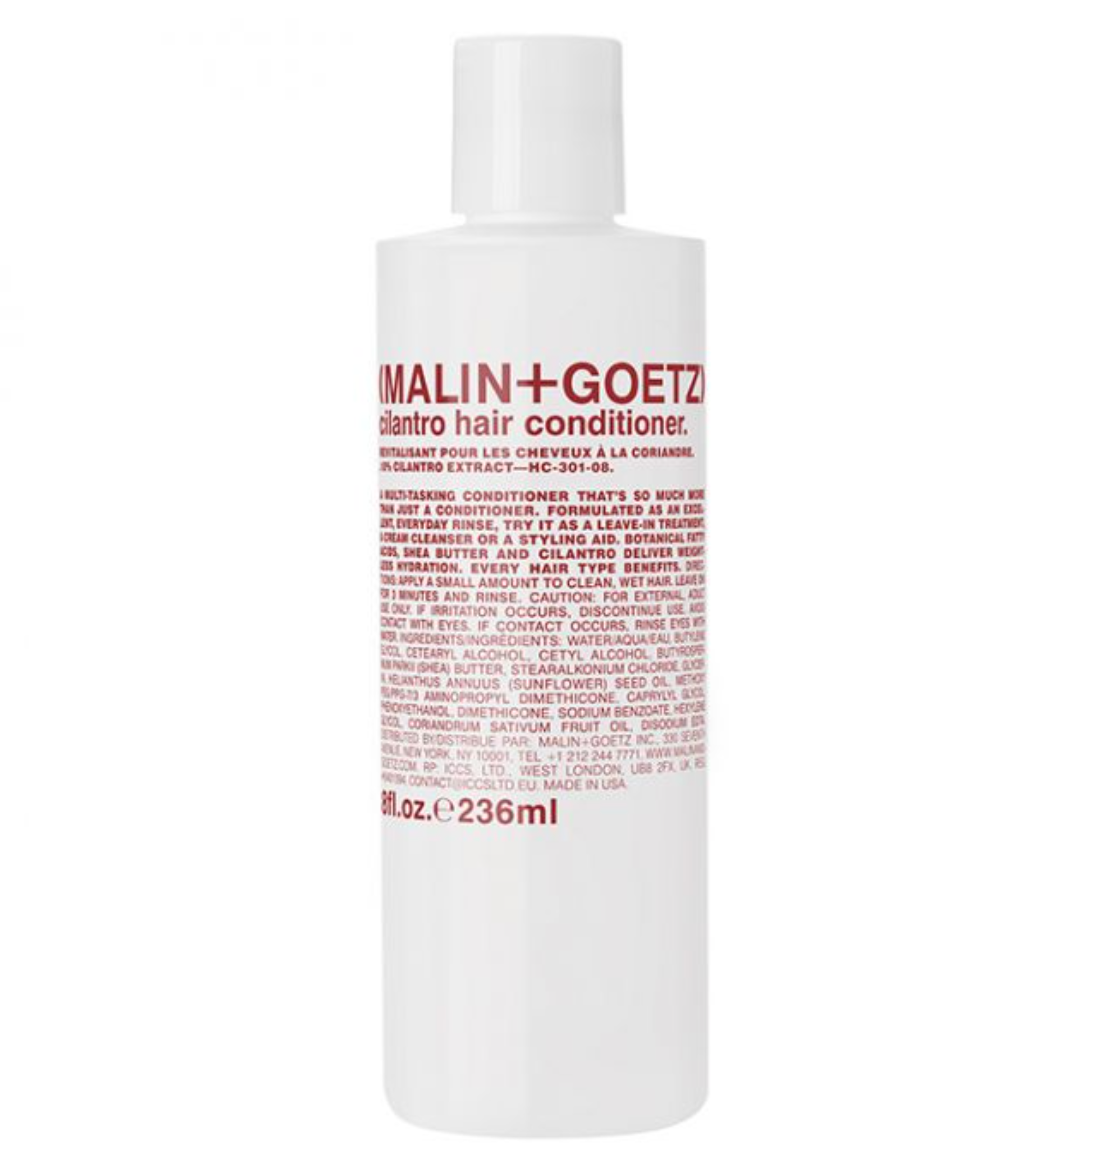 cilantro hair conditioner.:Malin+Goetz: